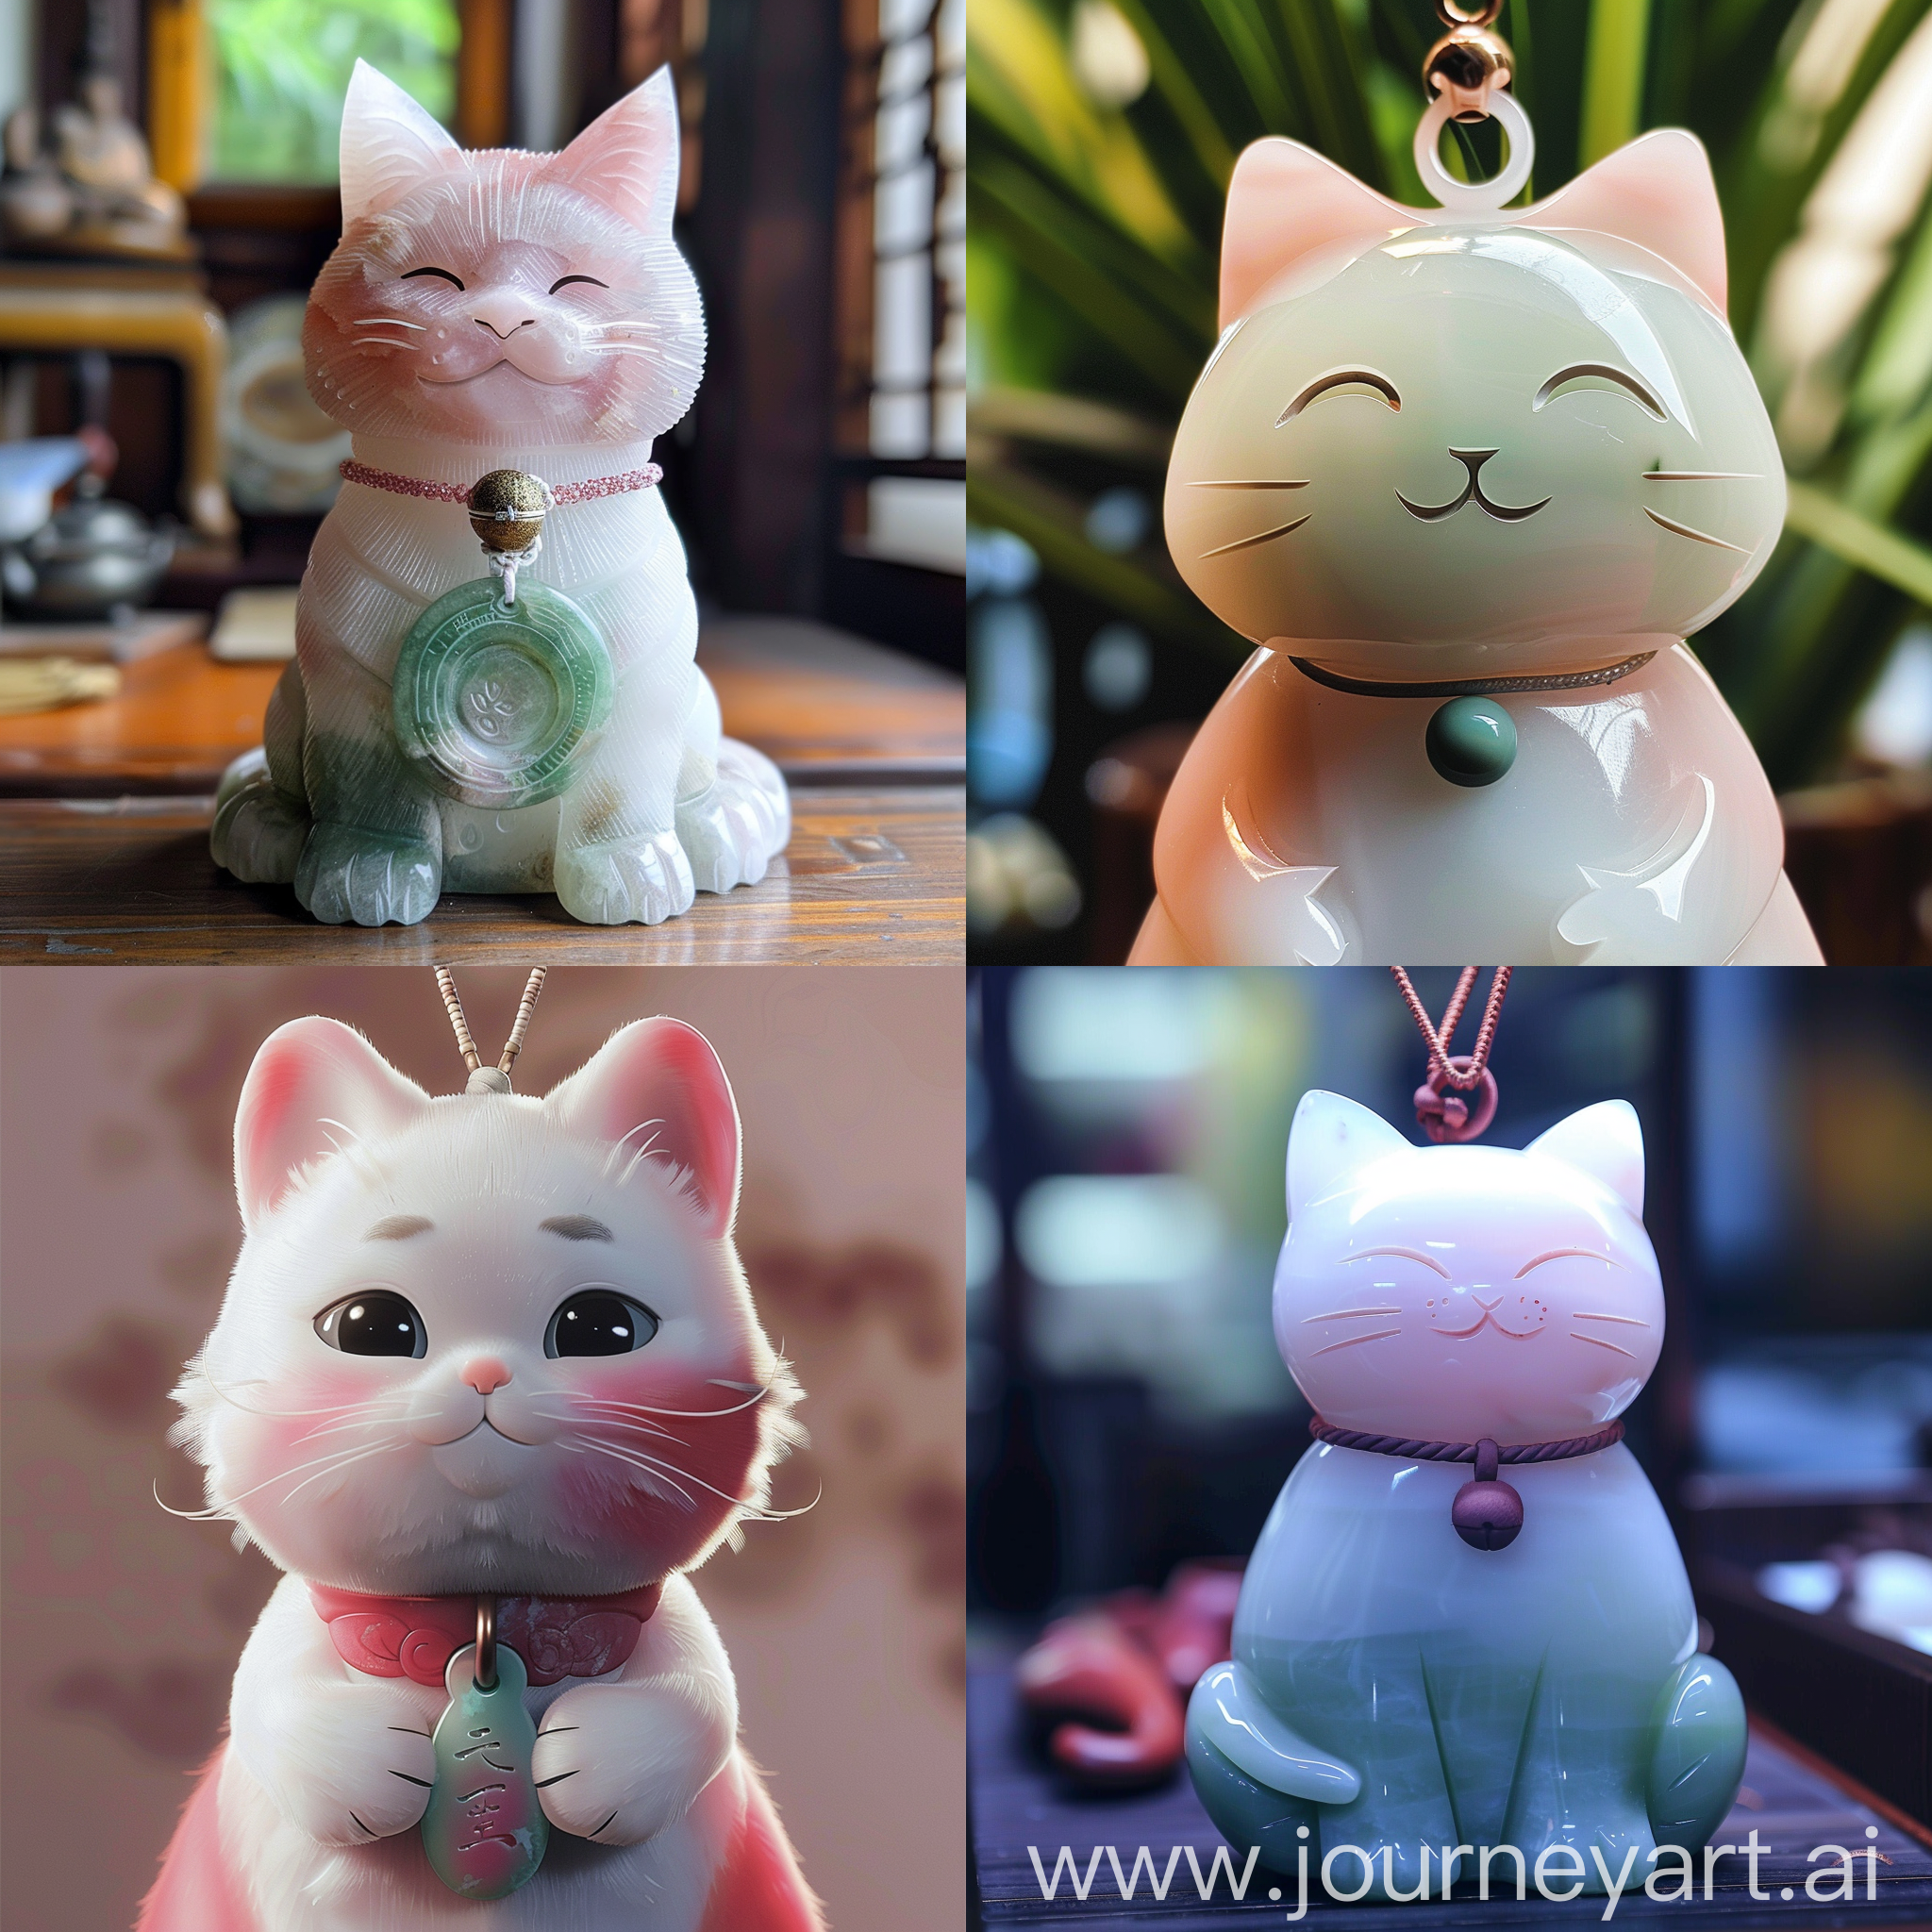 吉祥物，一只白种掺粉的猫，脖子上戴着一个白色占比15%在边缘渐渐过渡到中心粉色85%占比雕刻的小猫形状的玉